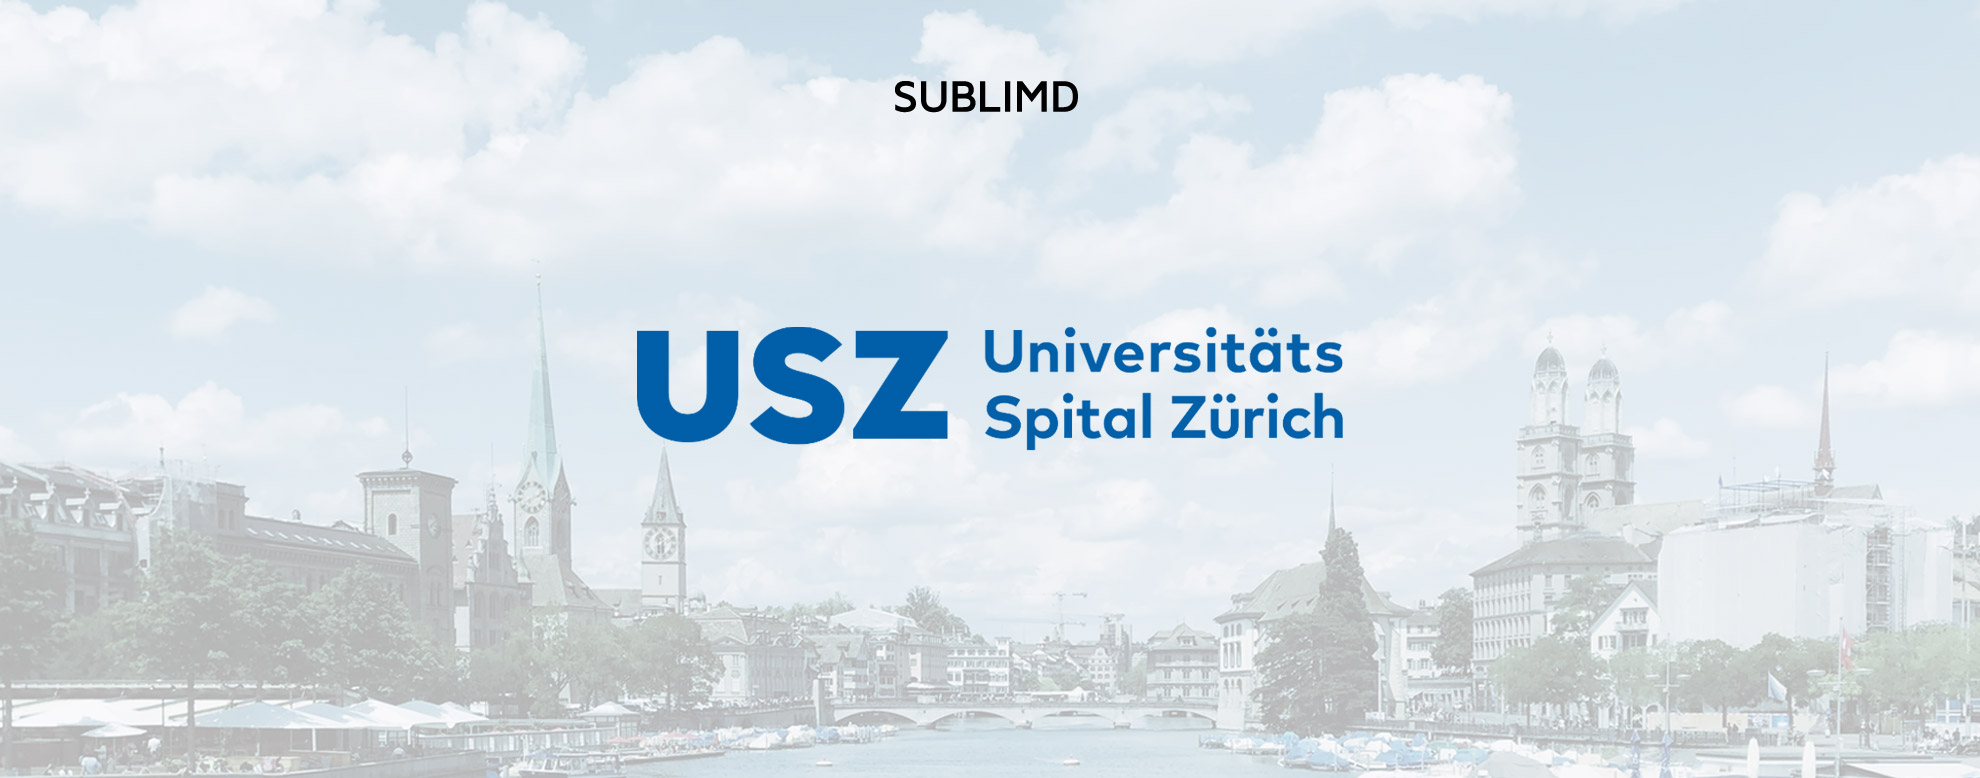 Case Study: Adipositas Zentrum Zürich des Universitätsspitals Zürich